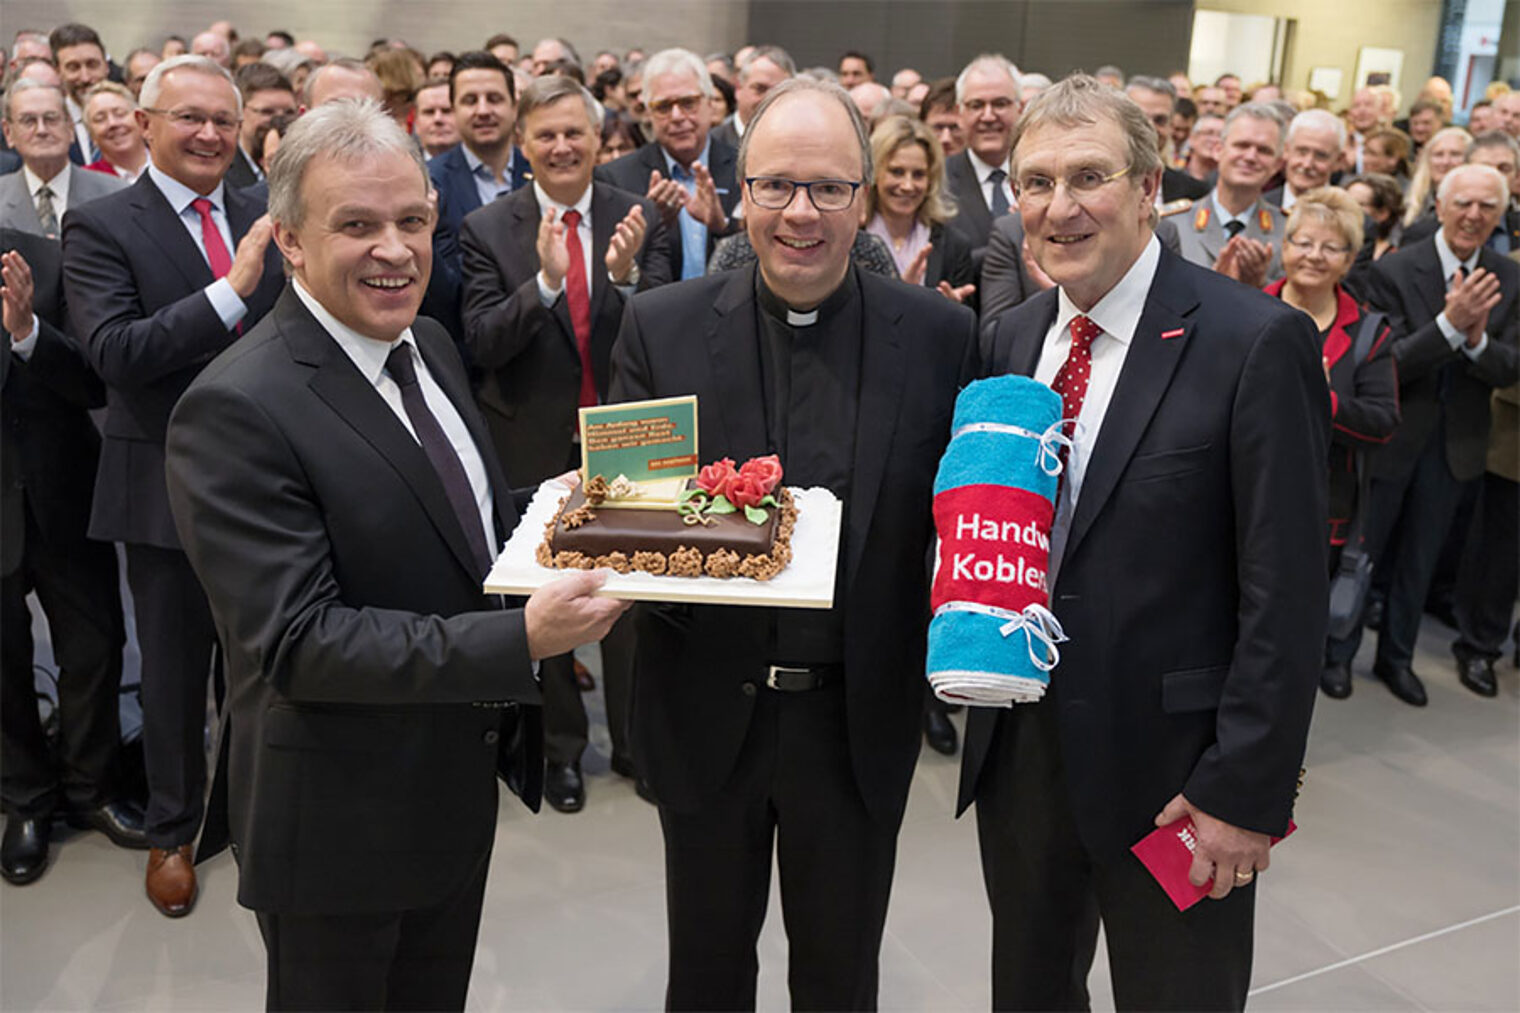 Bischof Stephan Ackermann erhält eine Torte mit dem Slogan der Imagekampagne des Handwerk.